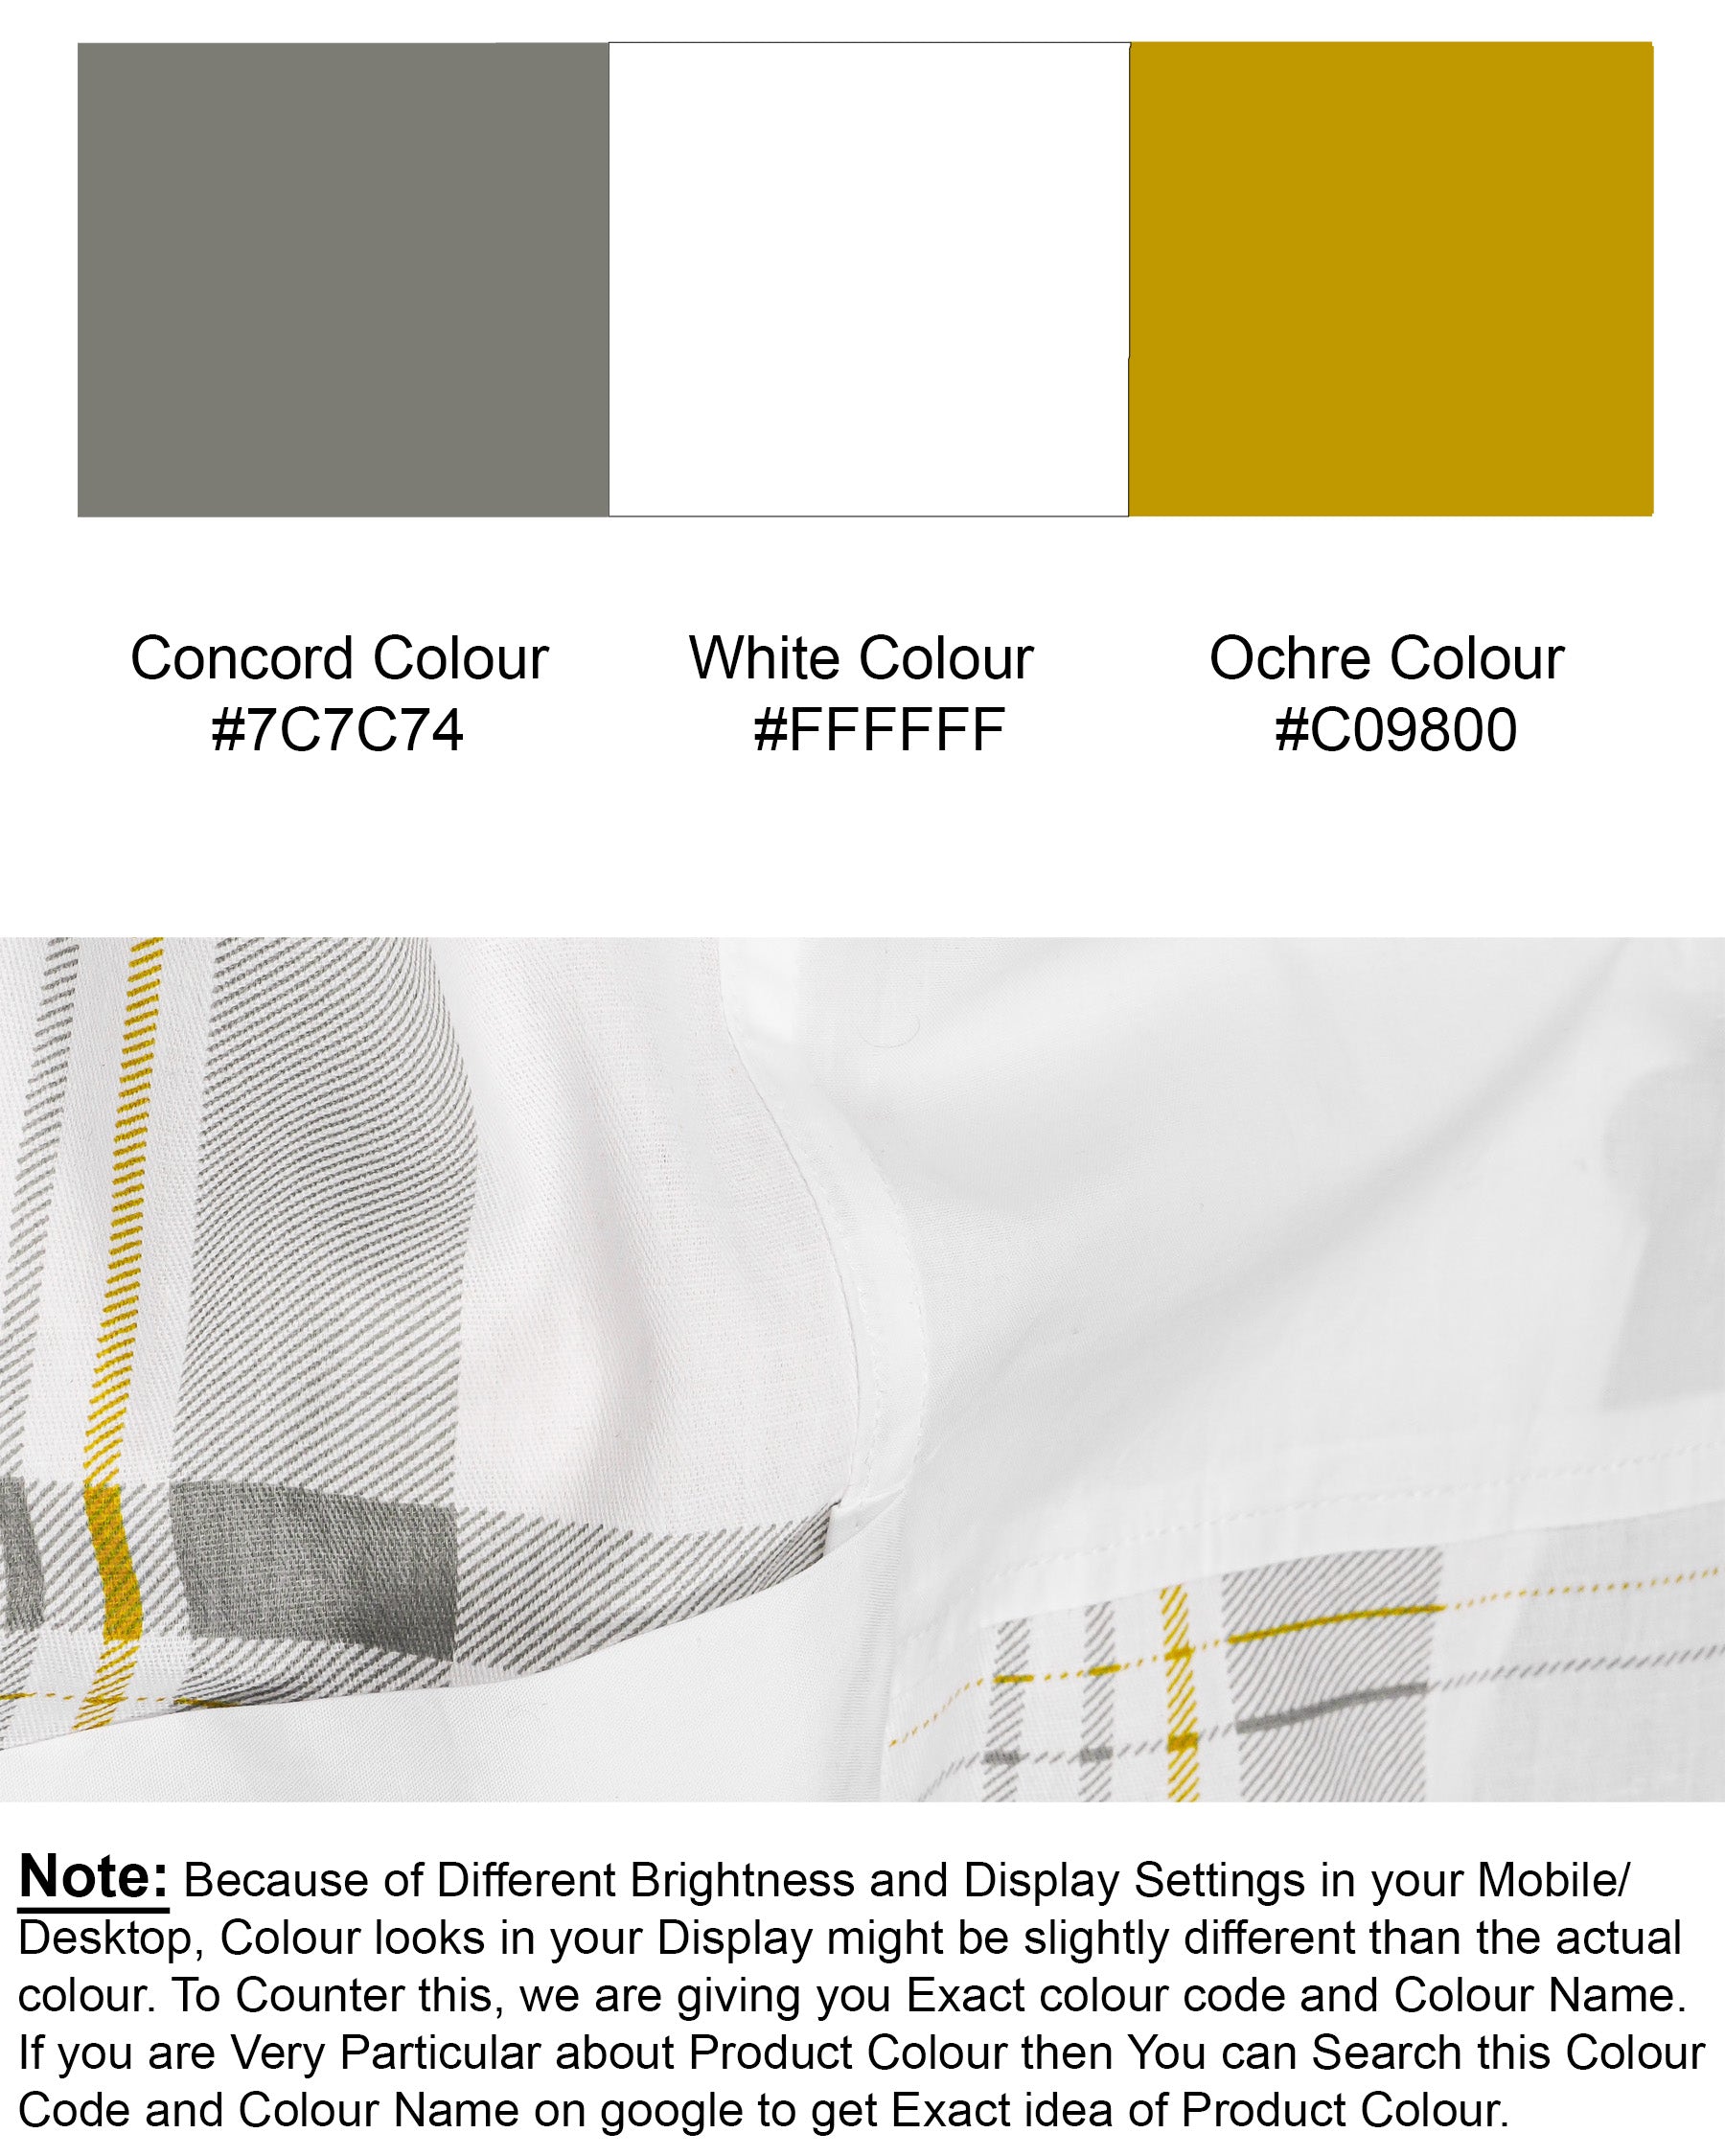 Bright White Plaid Premium Cotton Designer Shirt 7402-P103-38,7402-P103-38,7402-P103-39,7402-P103-39,7402-P103-40,7402-P103-40,7402-P103-42,7402-P103-42,7402-P103-44,7402-P103-44,7402-P103-46,7402-P103-46,7402-P103-48,7402-P103-48,7402-P103-50,7402-P103-50,7402-P103-52,7402-P103-52